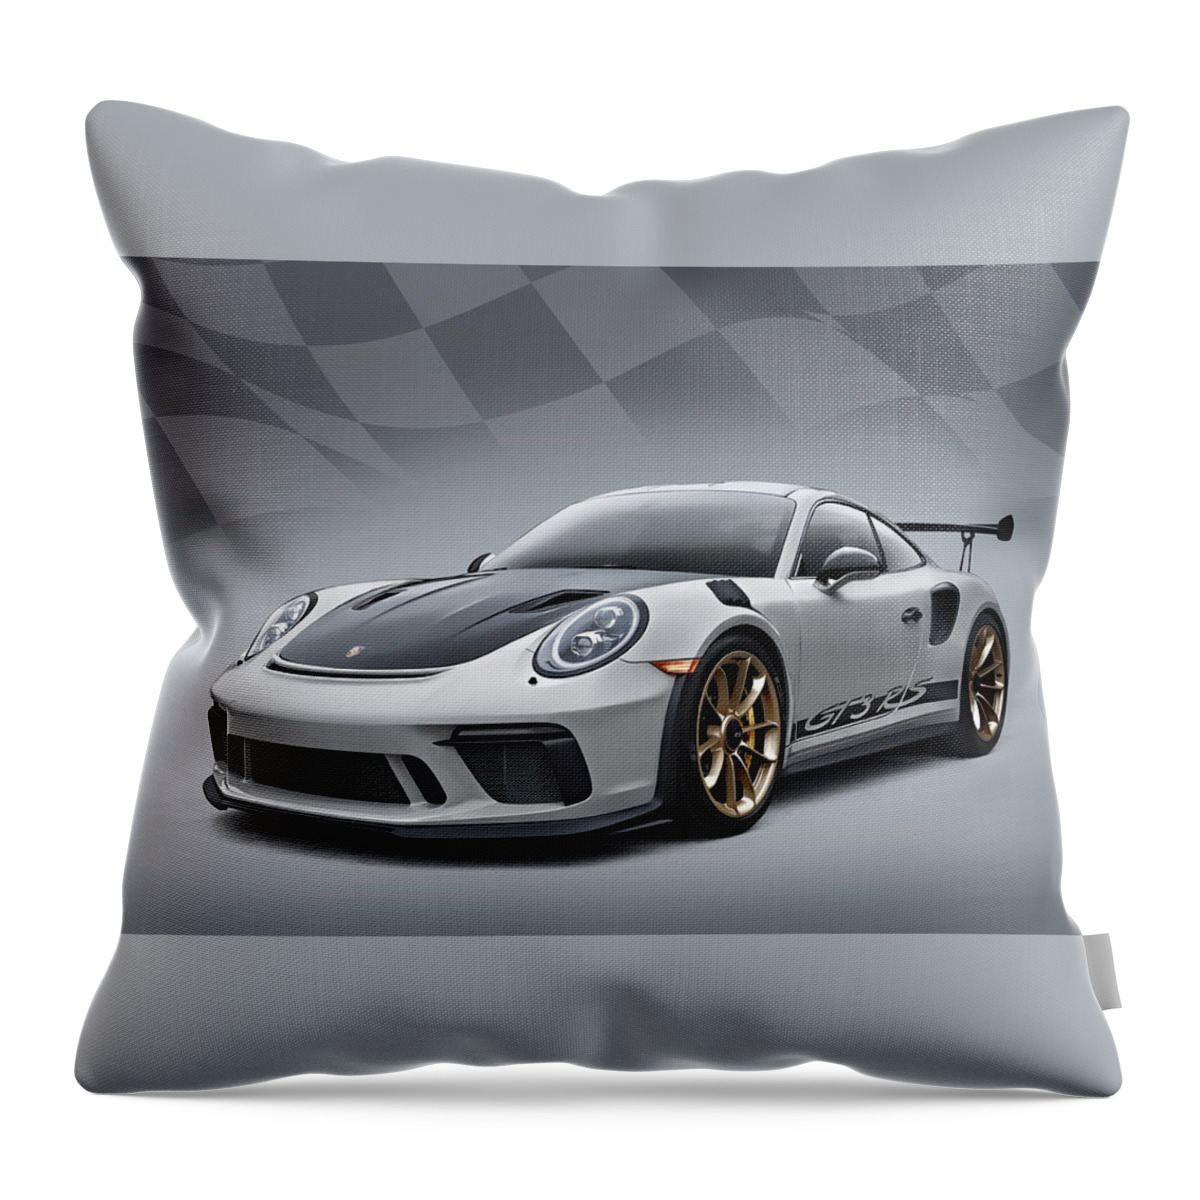 Porsche Throw Pillow featuring the photograph Gt3 Rs by Douglas Pittman